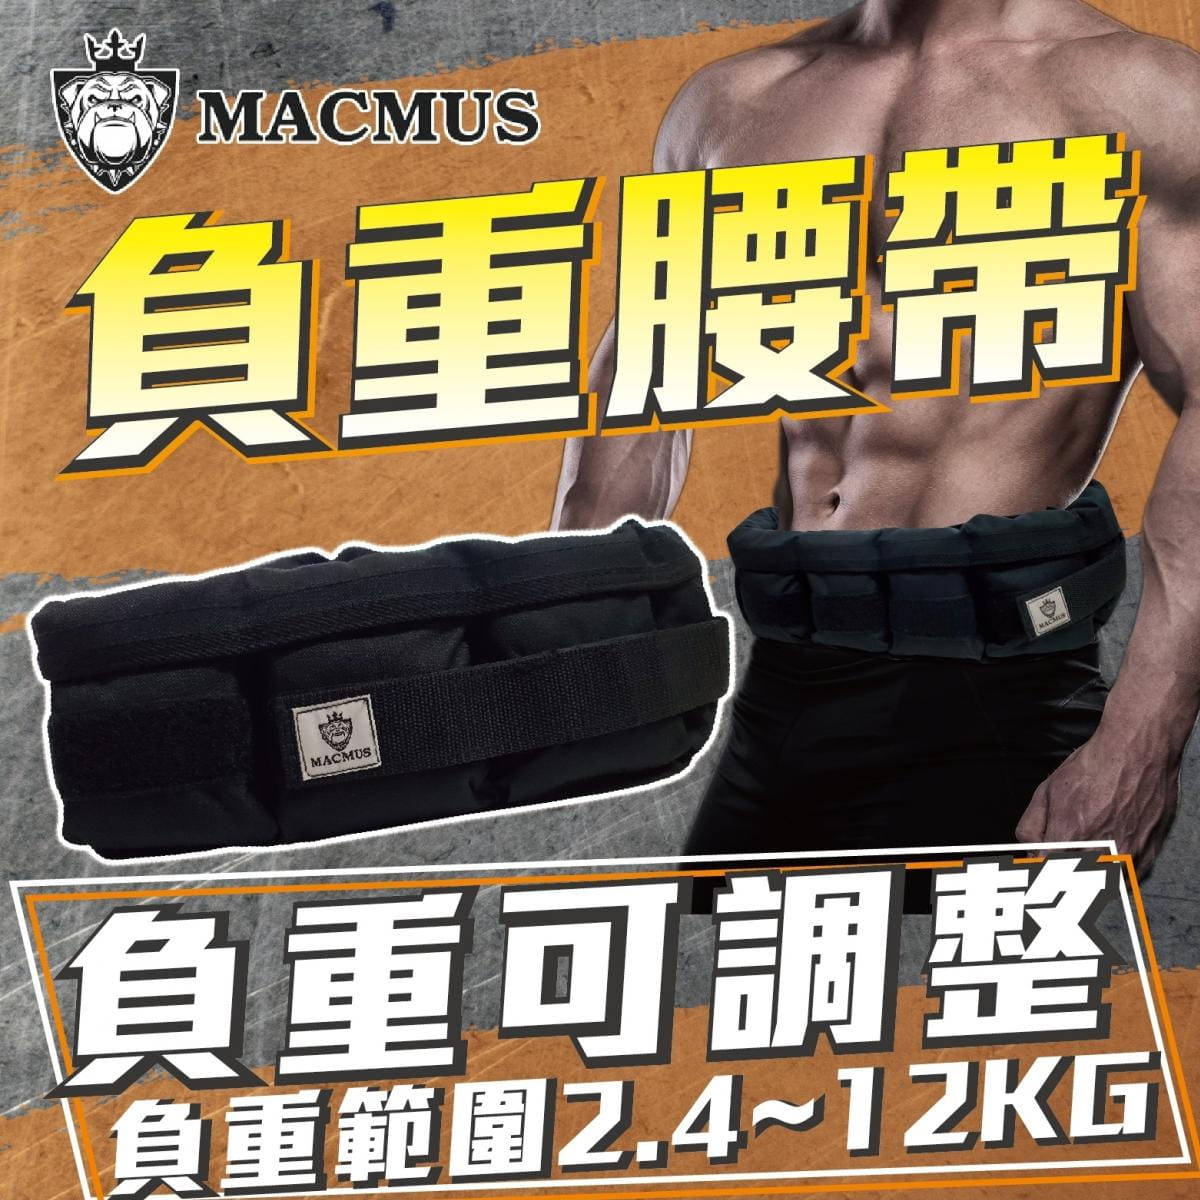 【MACMUS】4公斤負重腰帶｜8格式可調整重訓腰帶｜強化核心肌群鍛鍊腰部肌肉 0